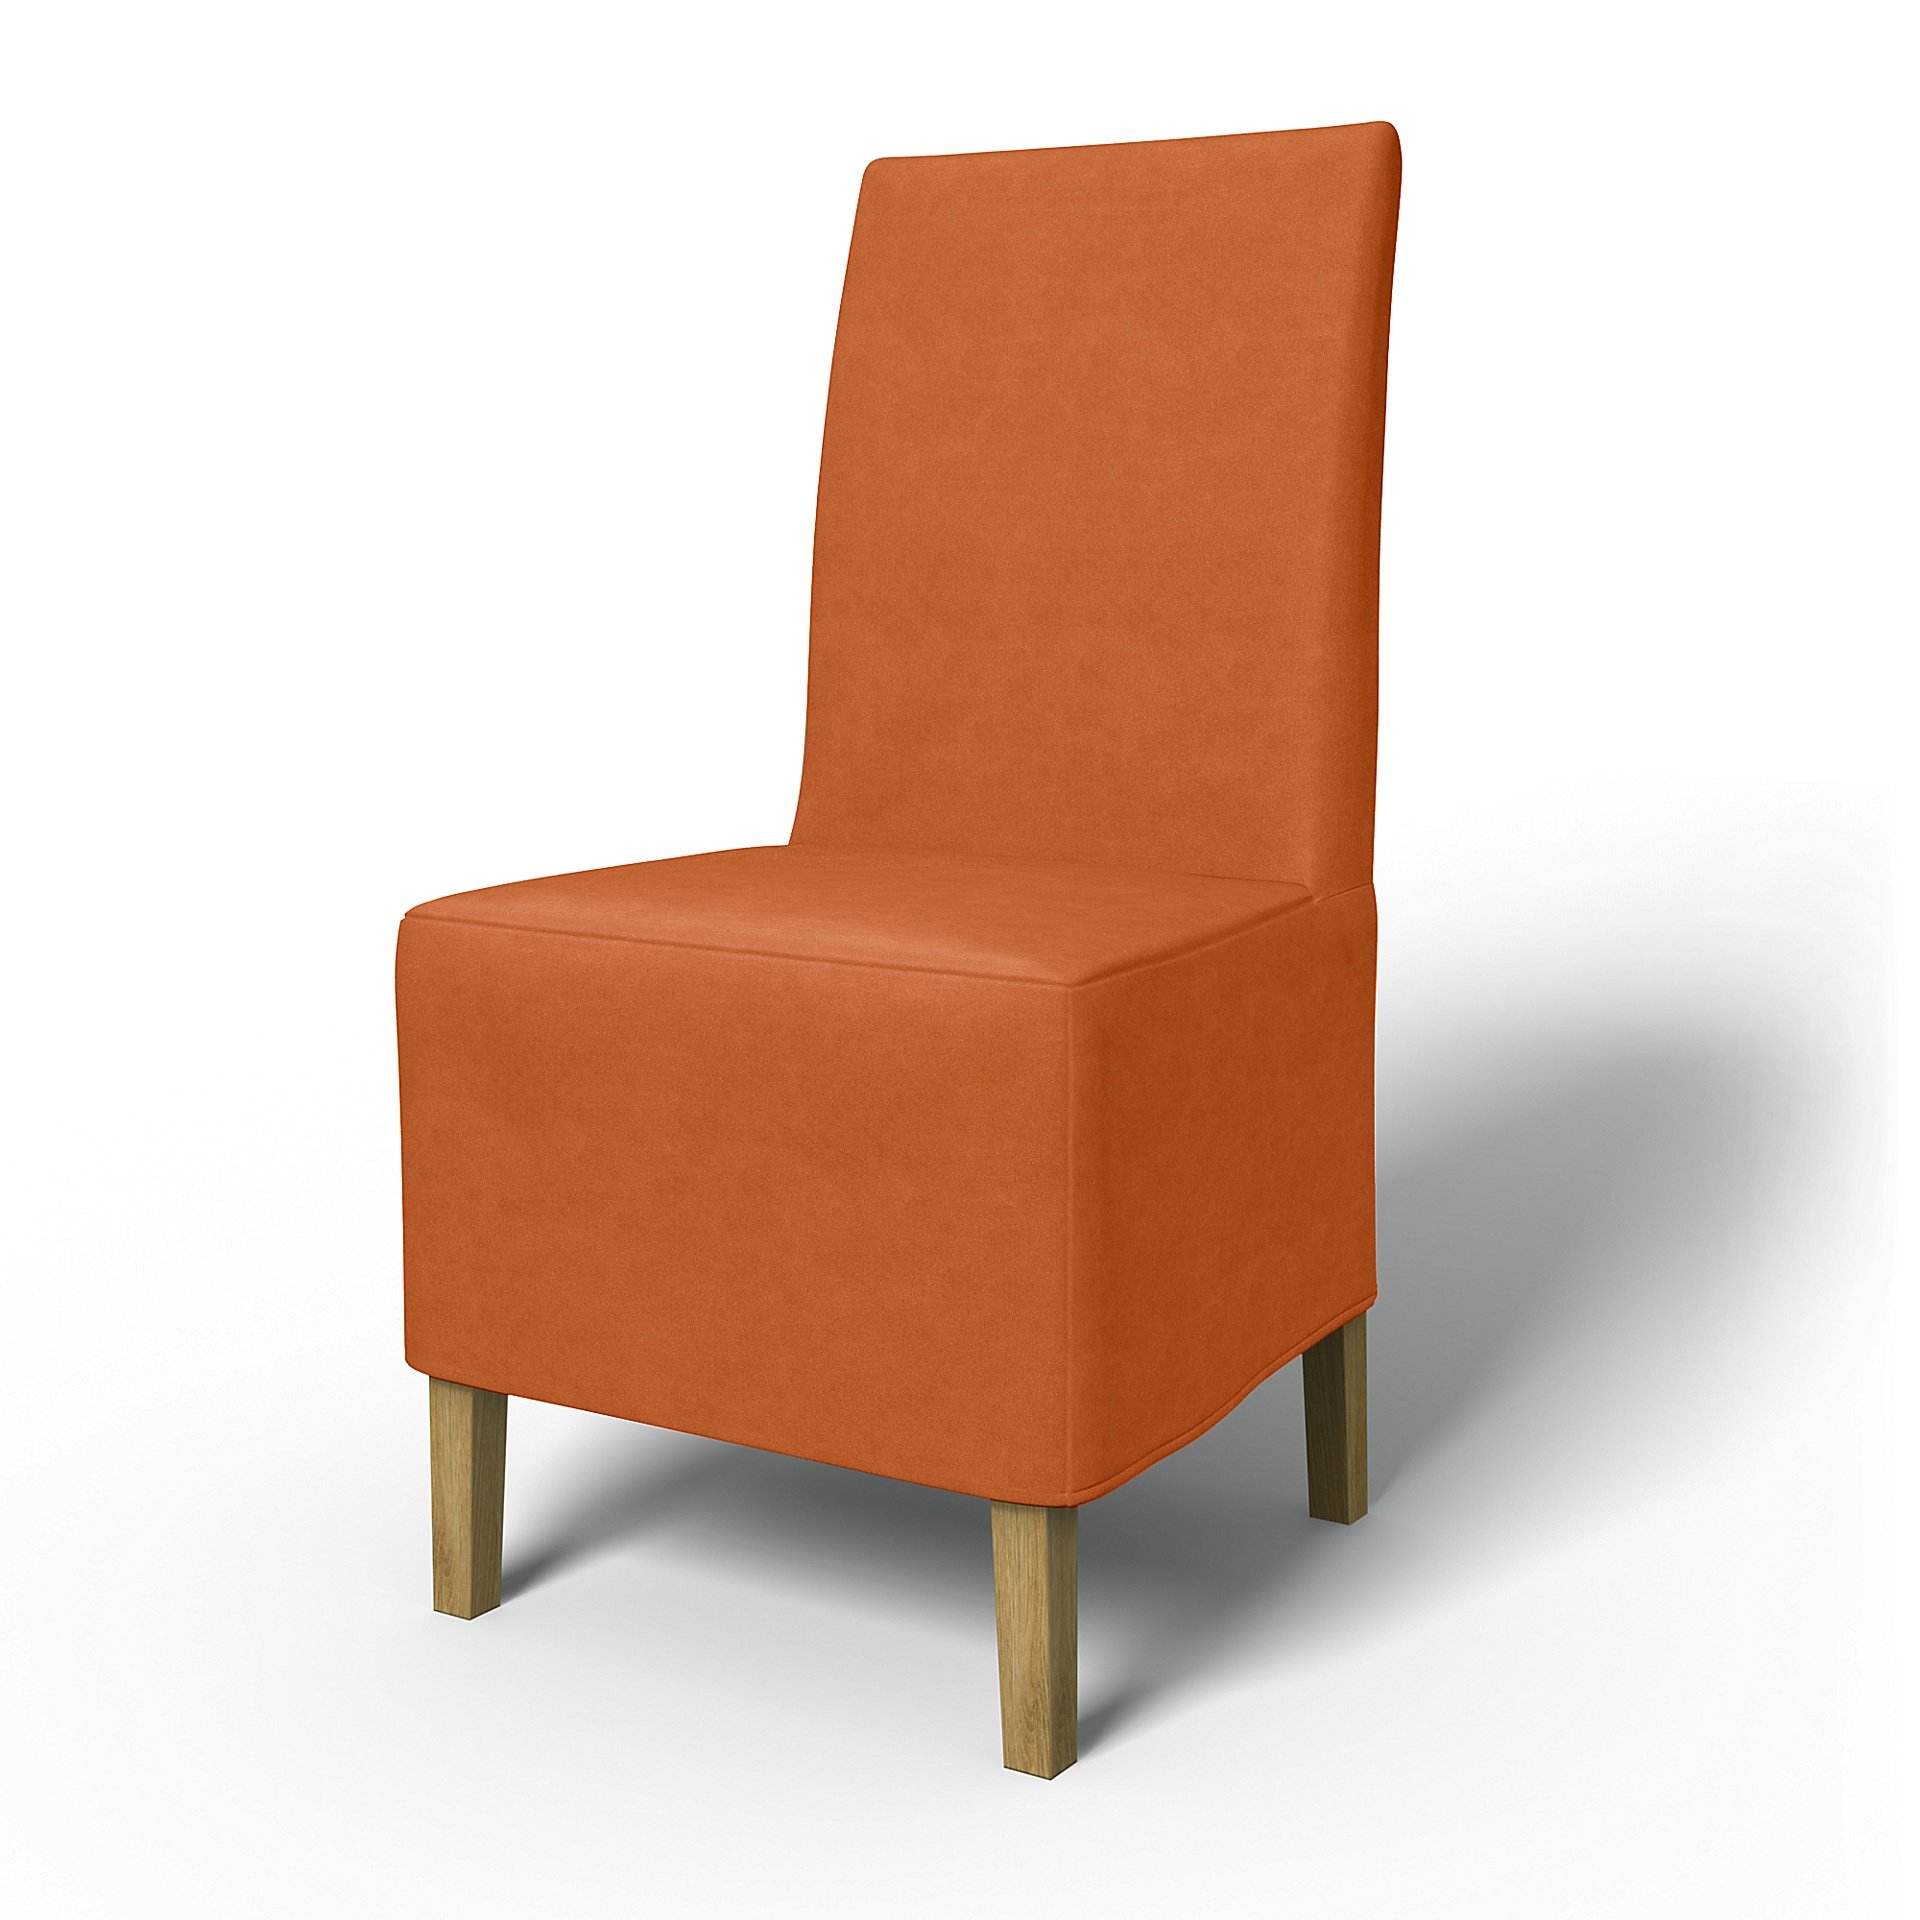 IKEA - Henriksdal Dining Chair Cover Medium skirt (Standard model), Rust, Outdoor - Bemz